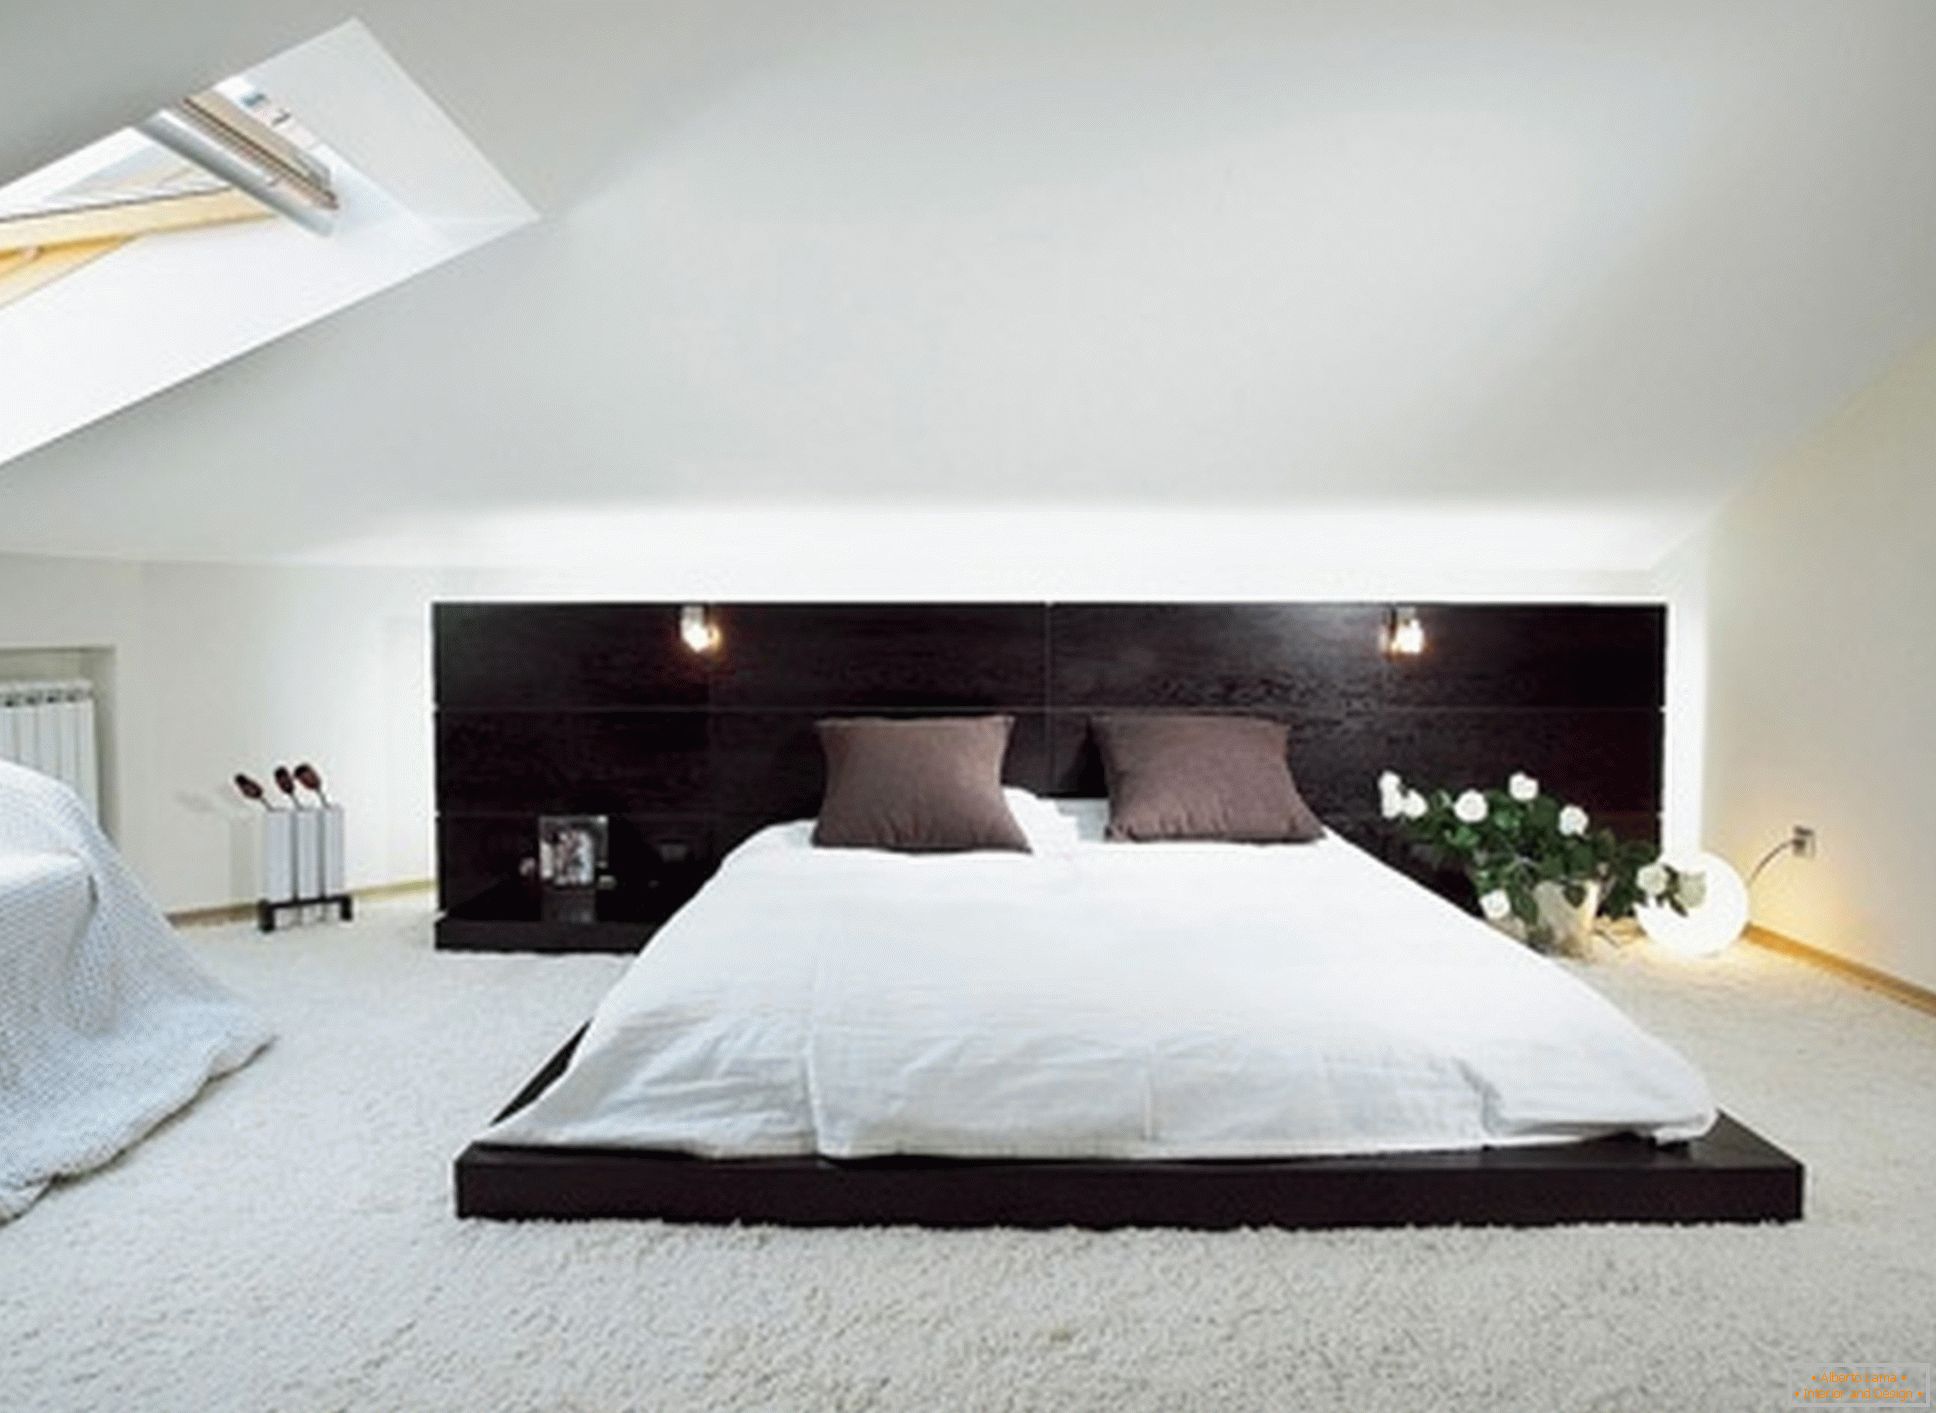 Шикарна спальня в стилі мінімалізм - приклад вдалого оформлення невеликого приміщення на мансардному поверсі.